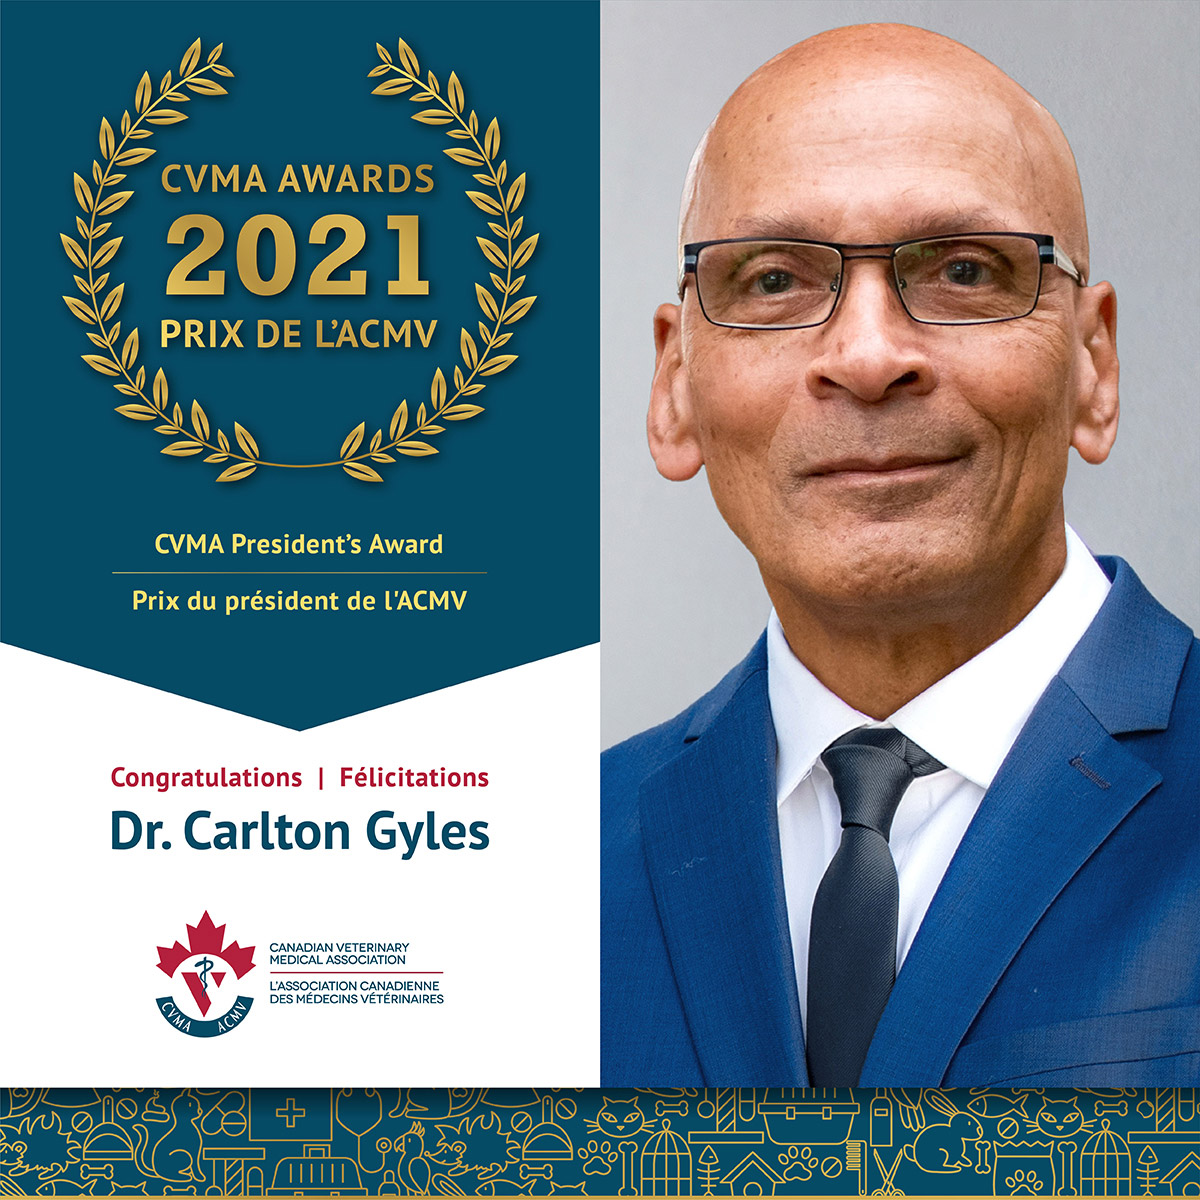 Dr. Carlton Gyles